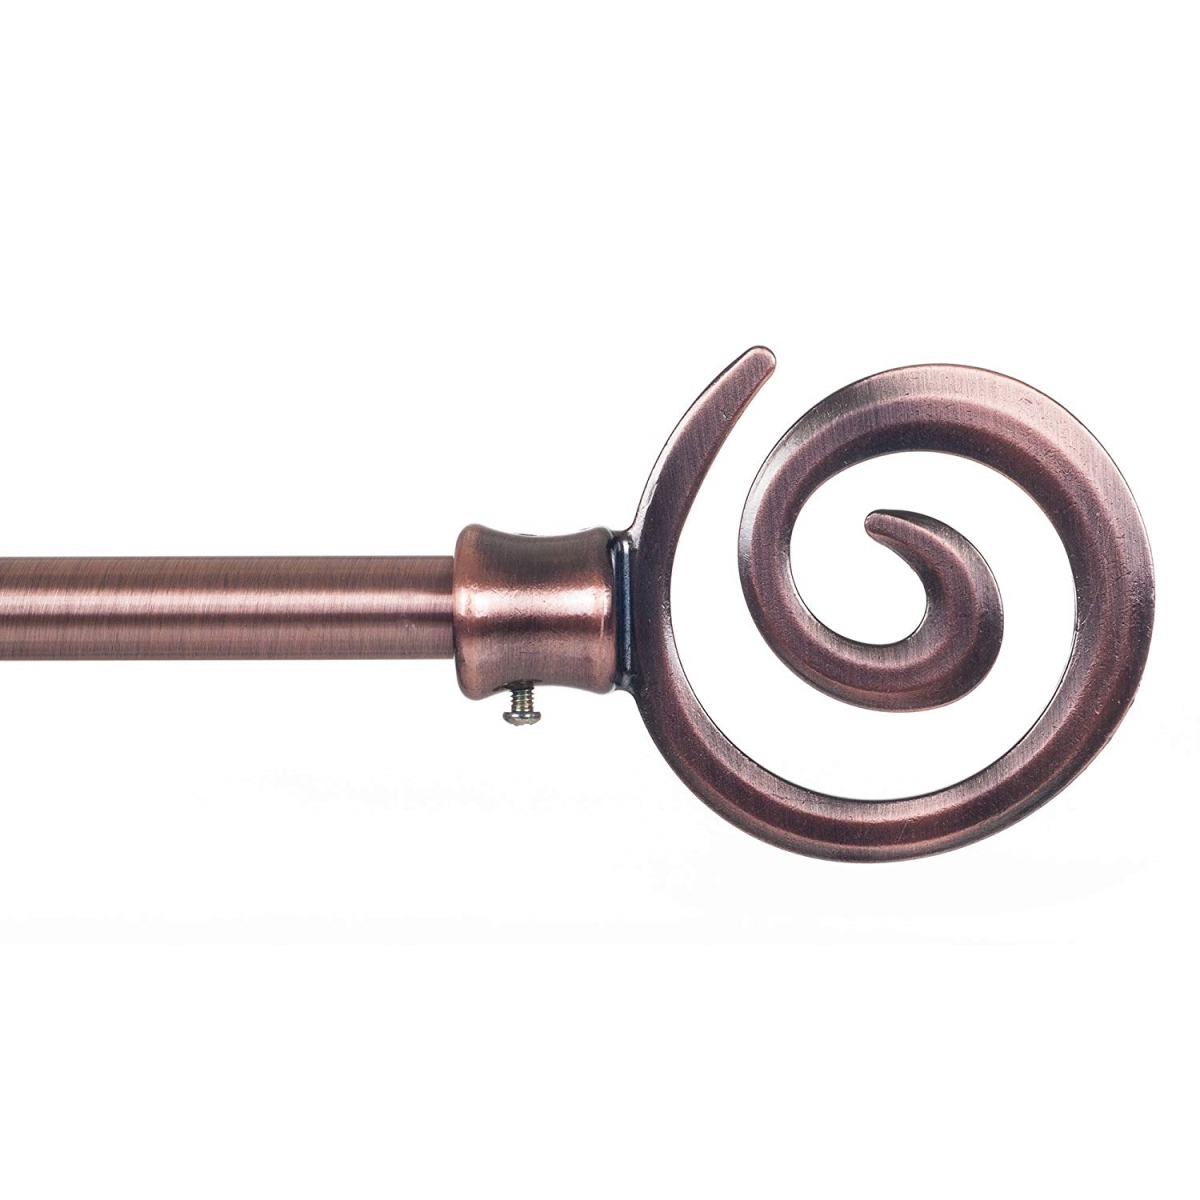 63a-06561 Spiral Curtain Rod, Antique Copper - 0.75 In.